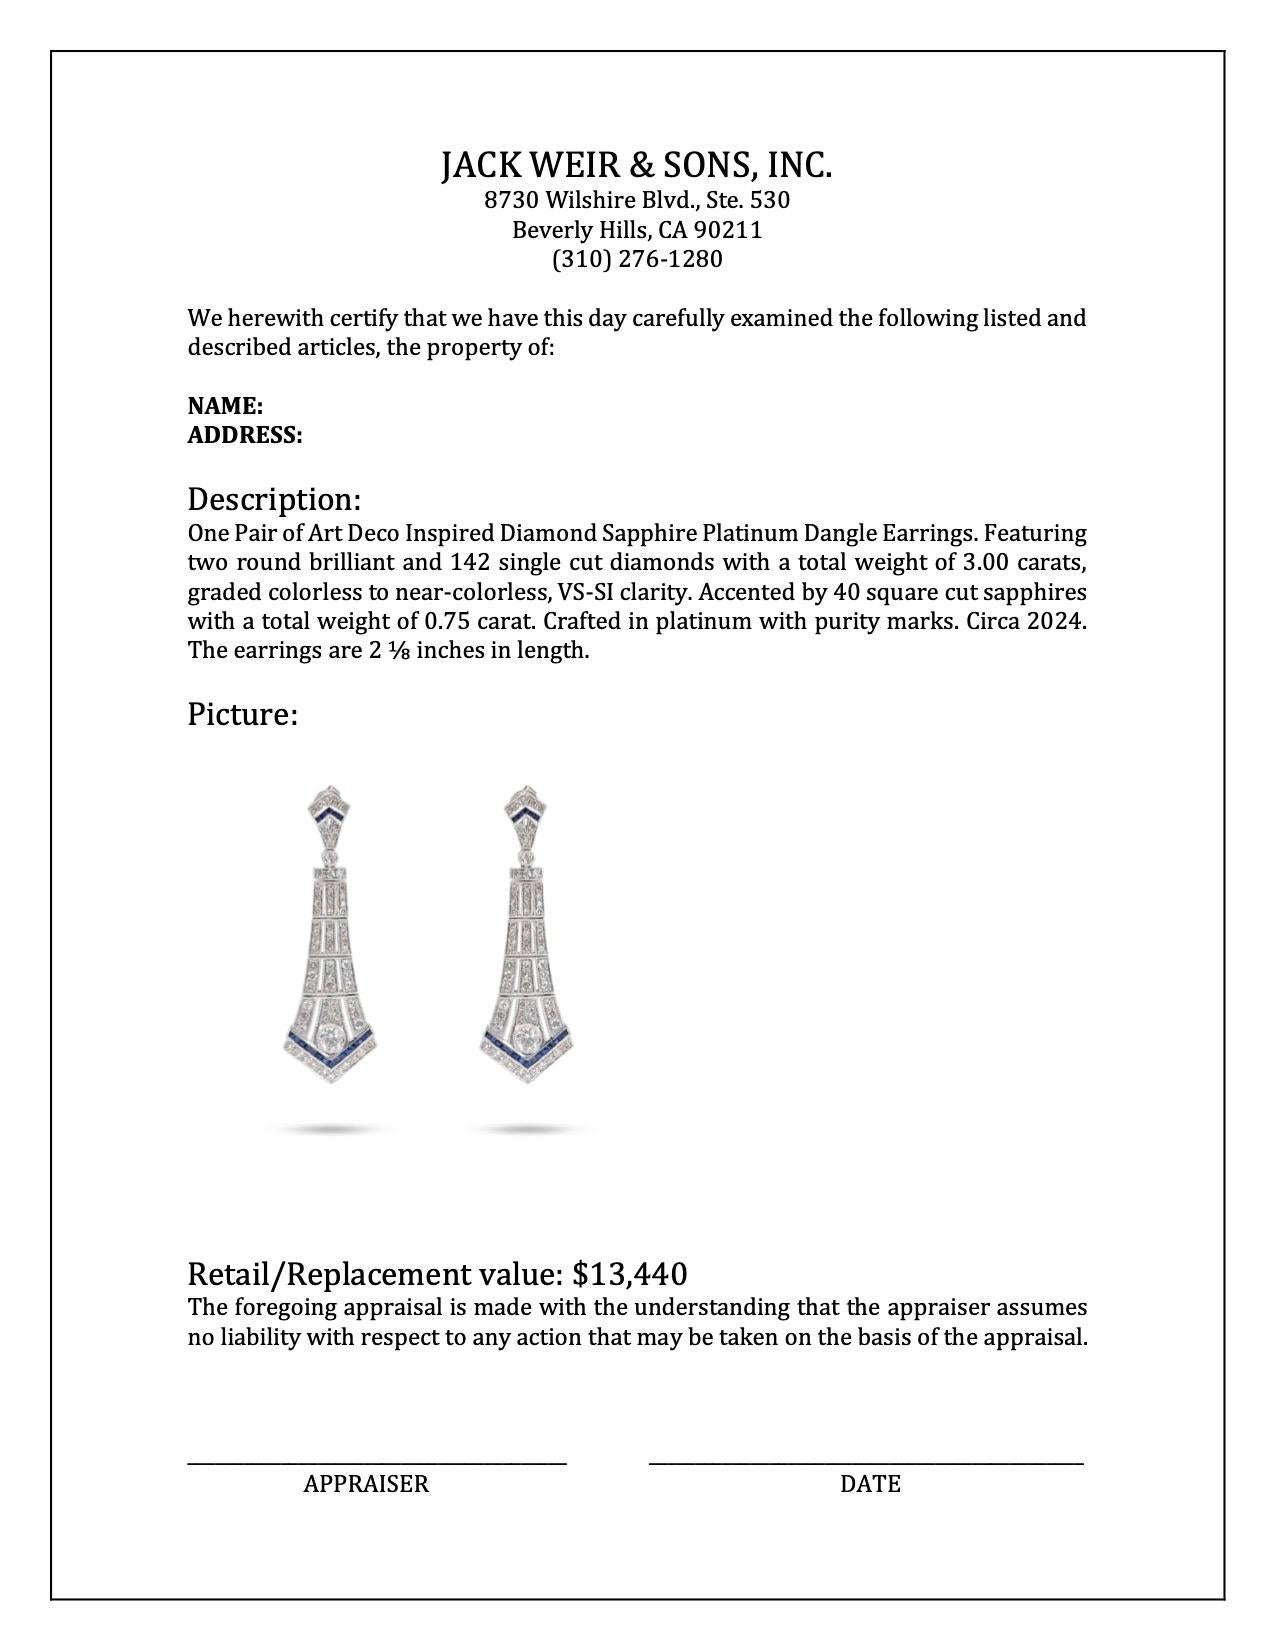 Women's or Men's Art Deco Inspired Diamond Sapphire Platinum Dangle Earrings For Sale